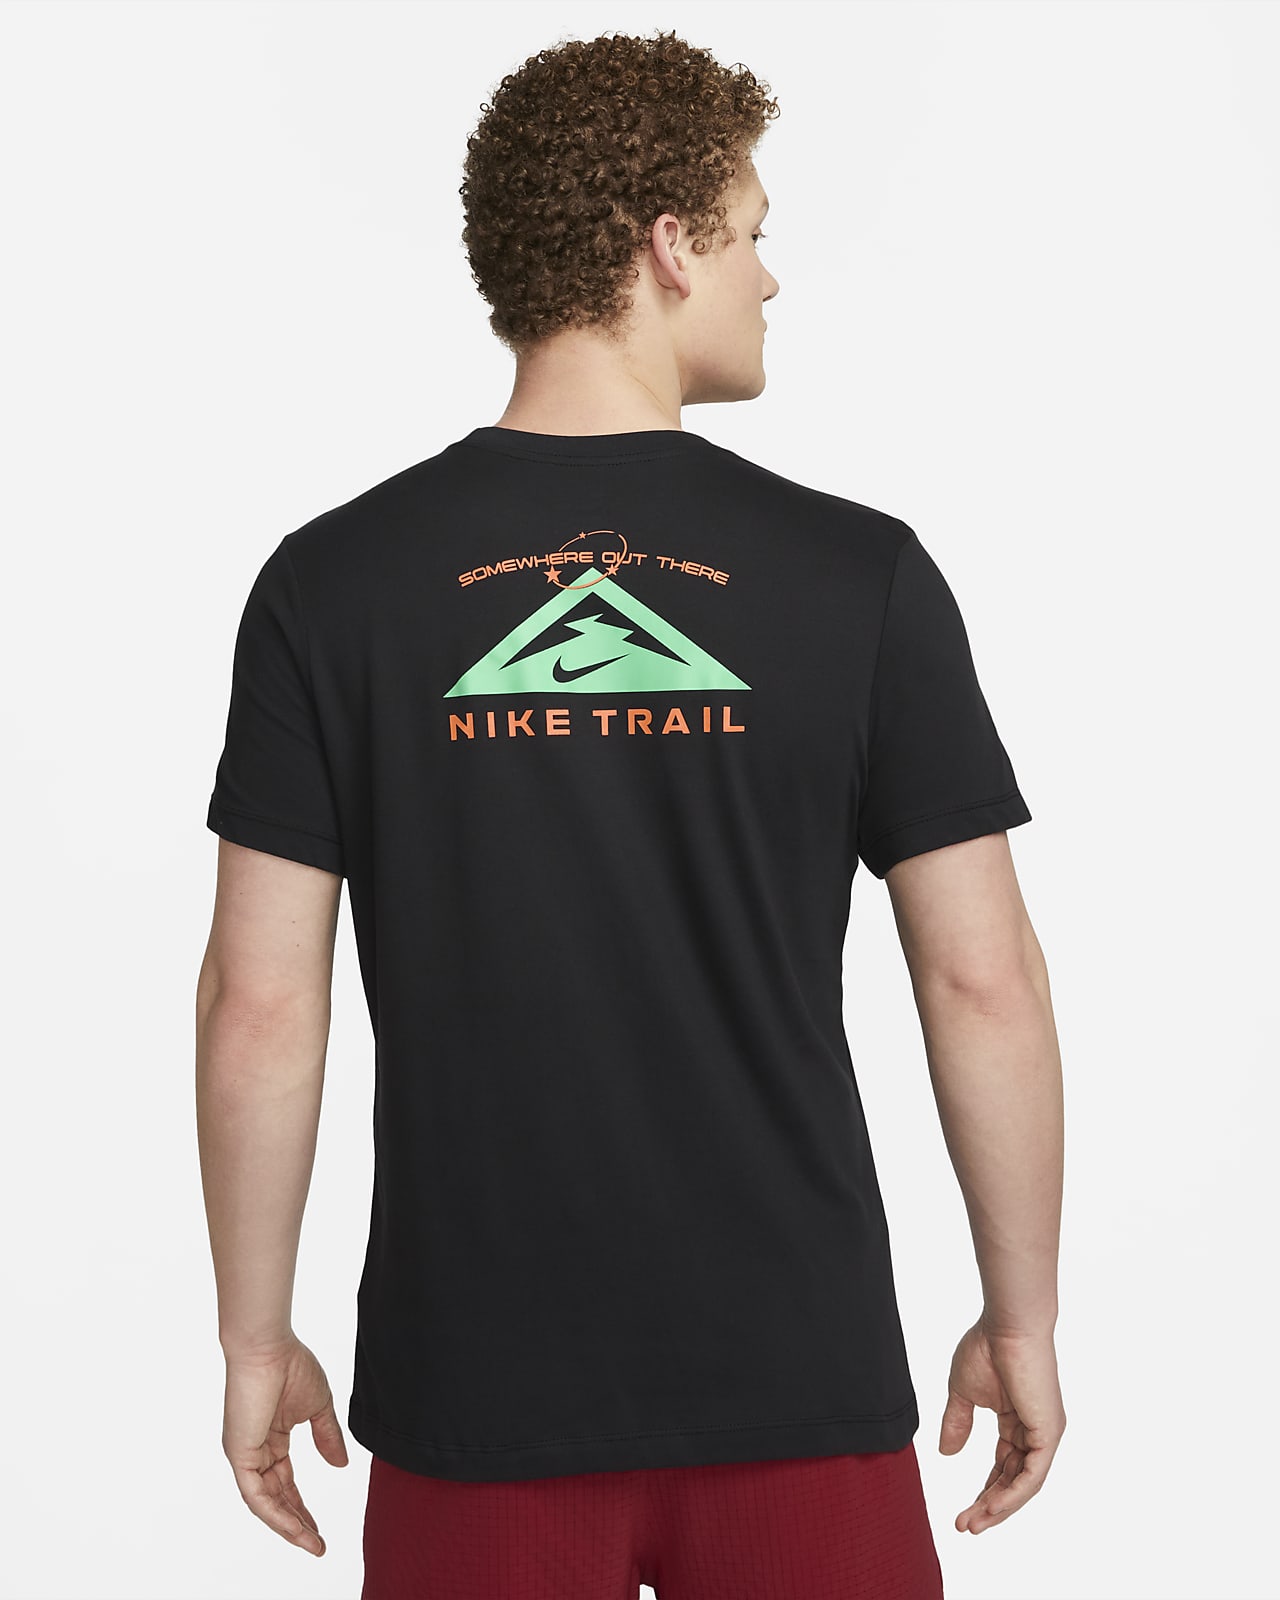 Nike Trail til DK